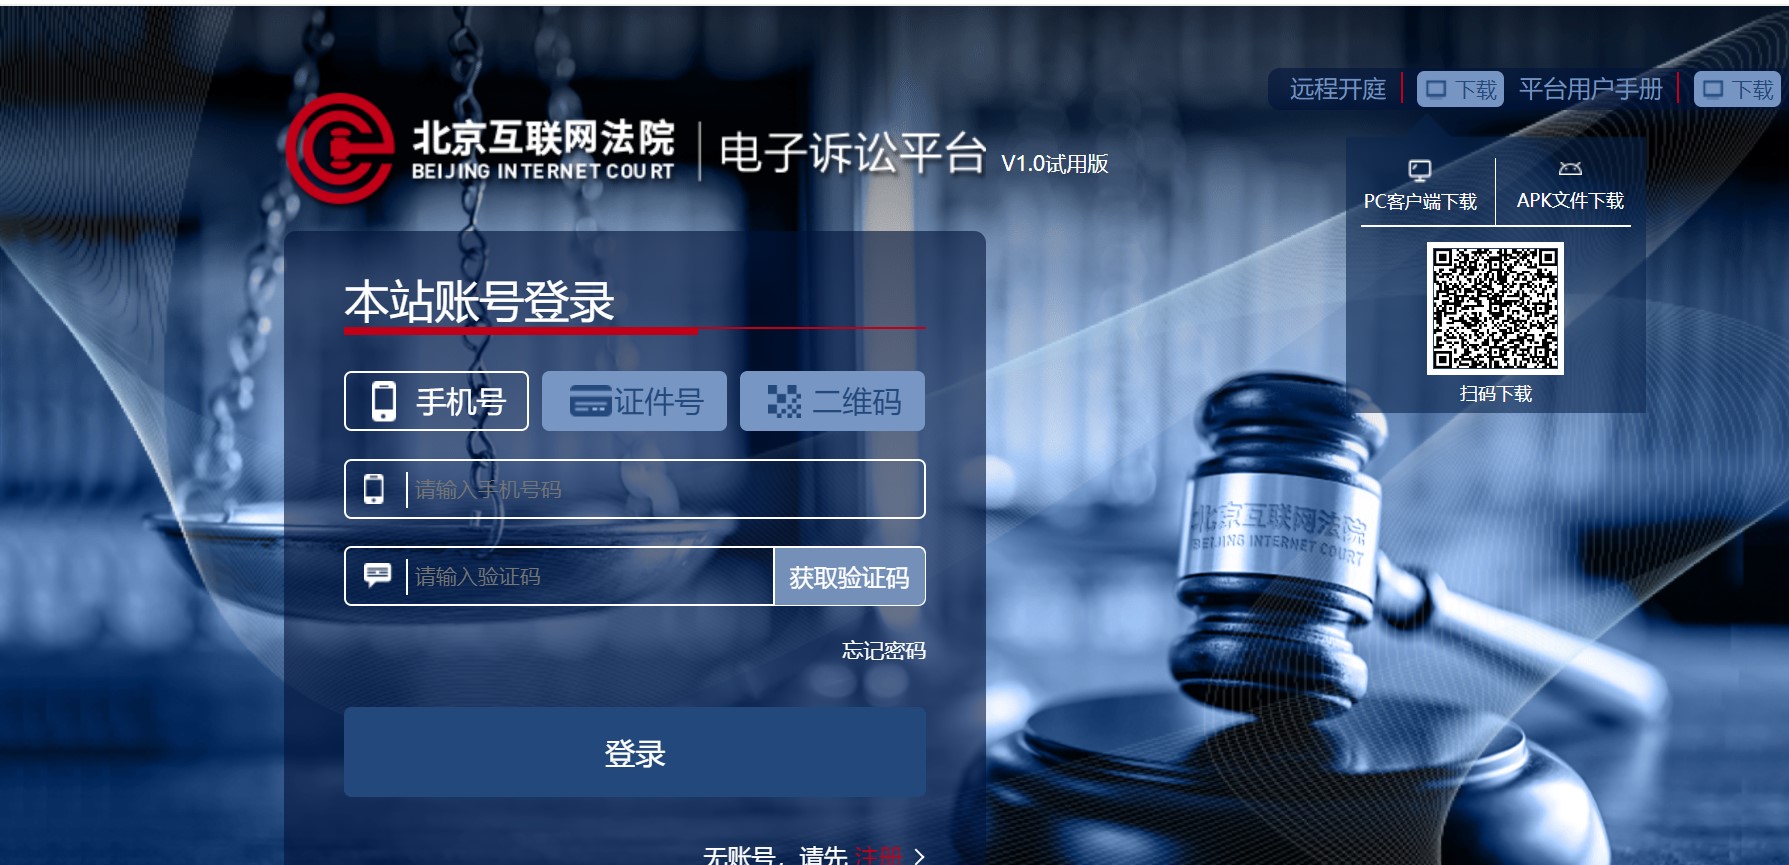 我所秦瑶律师分享“北京互联网法院实务”经验